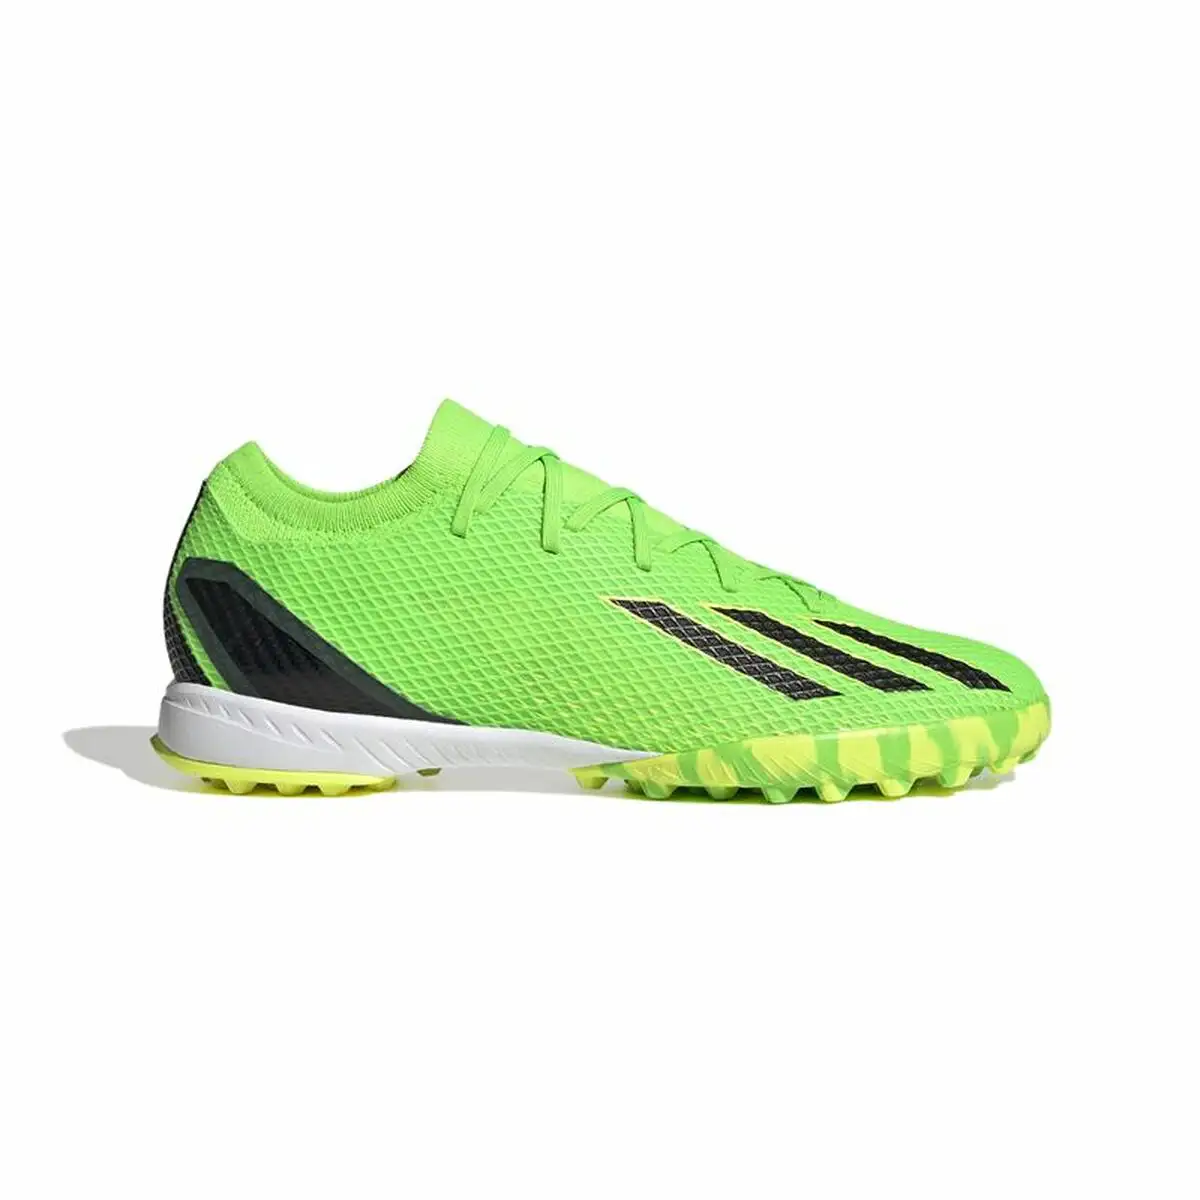 Chaussures de foot en salle adidas x speedportal 3 vert vert citron unisexe_7243. DIAYTAR SENEGAL - Votre Destination pour un Shopping Inoubliable. Naviguez à travers notre catalogue et choisissez des produits qui vous marquent par leur originalité.